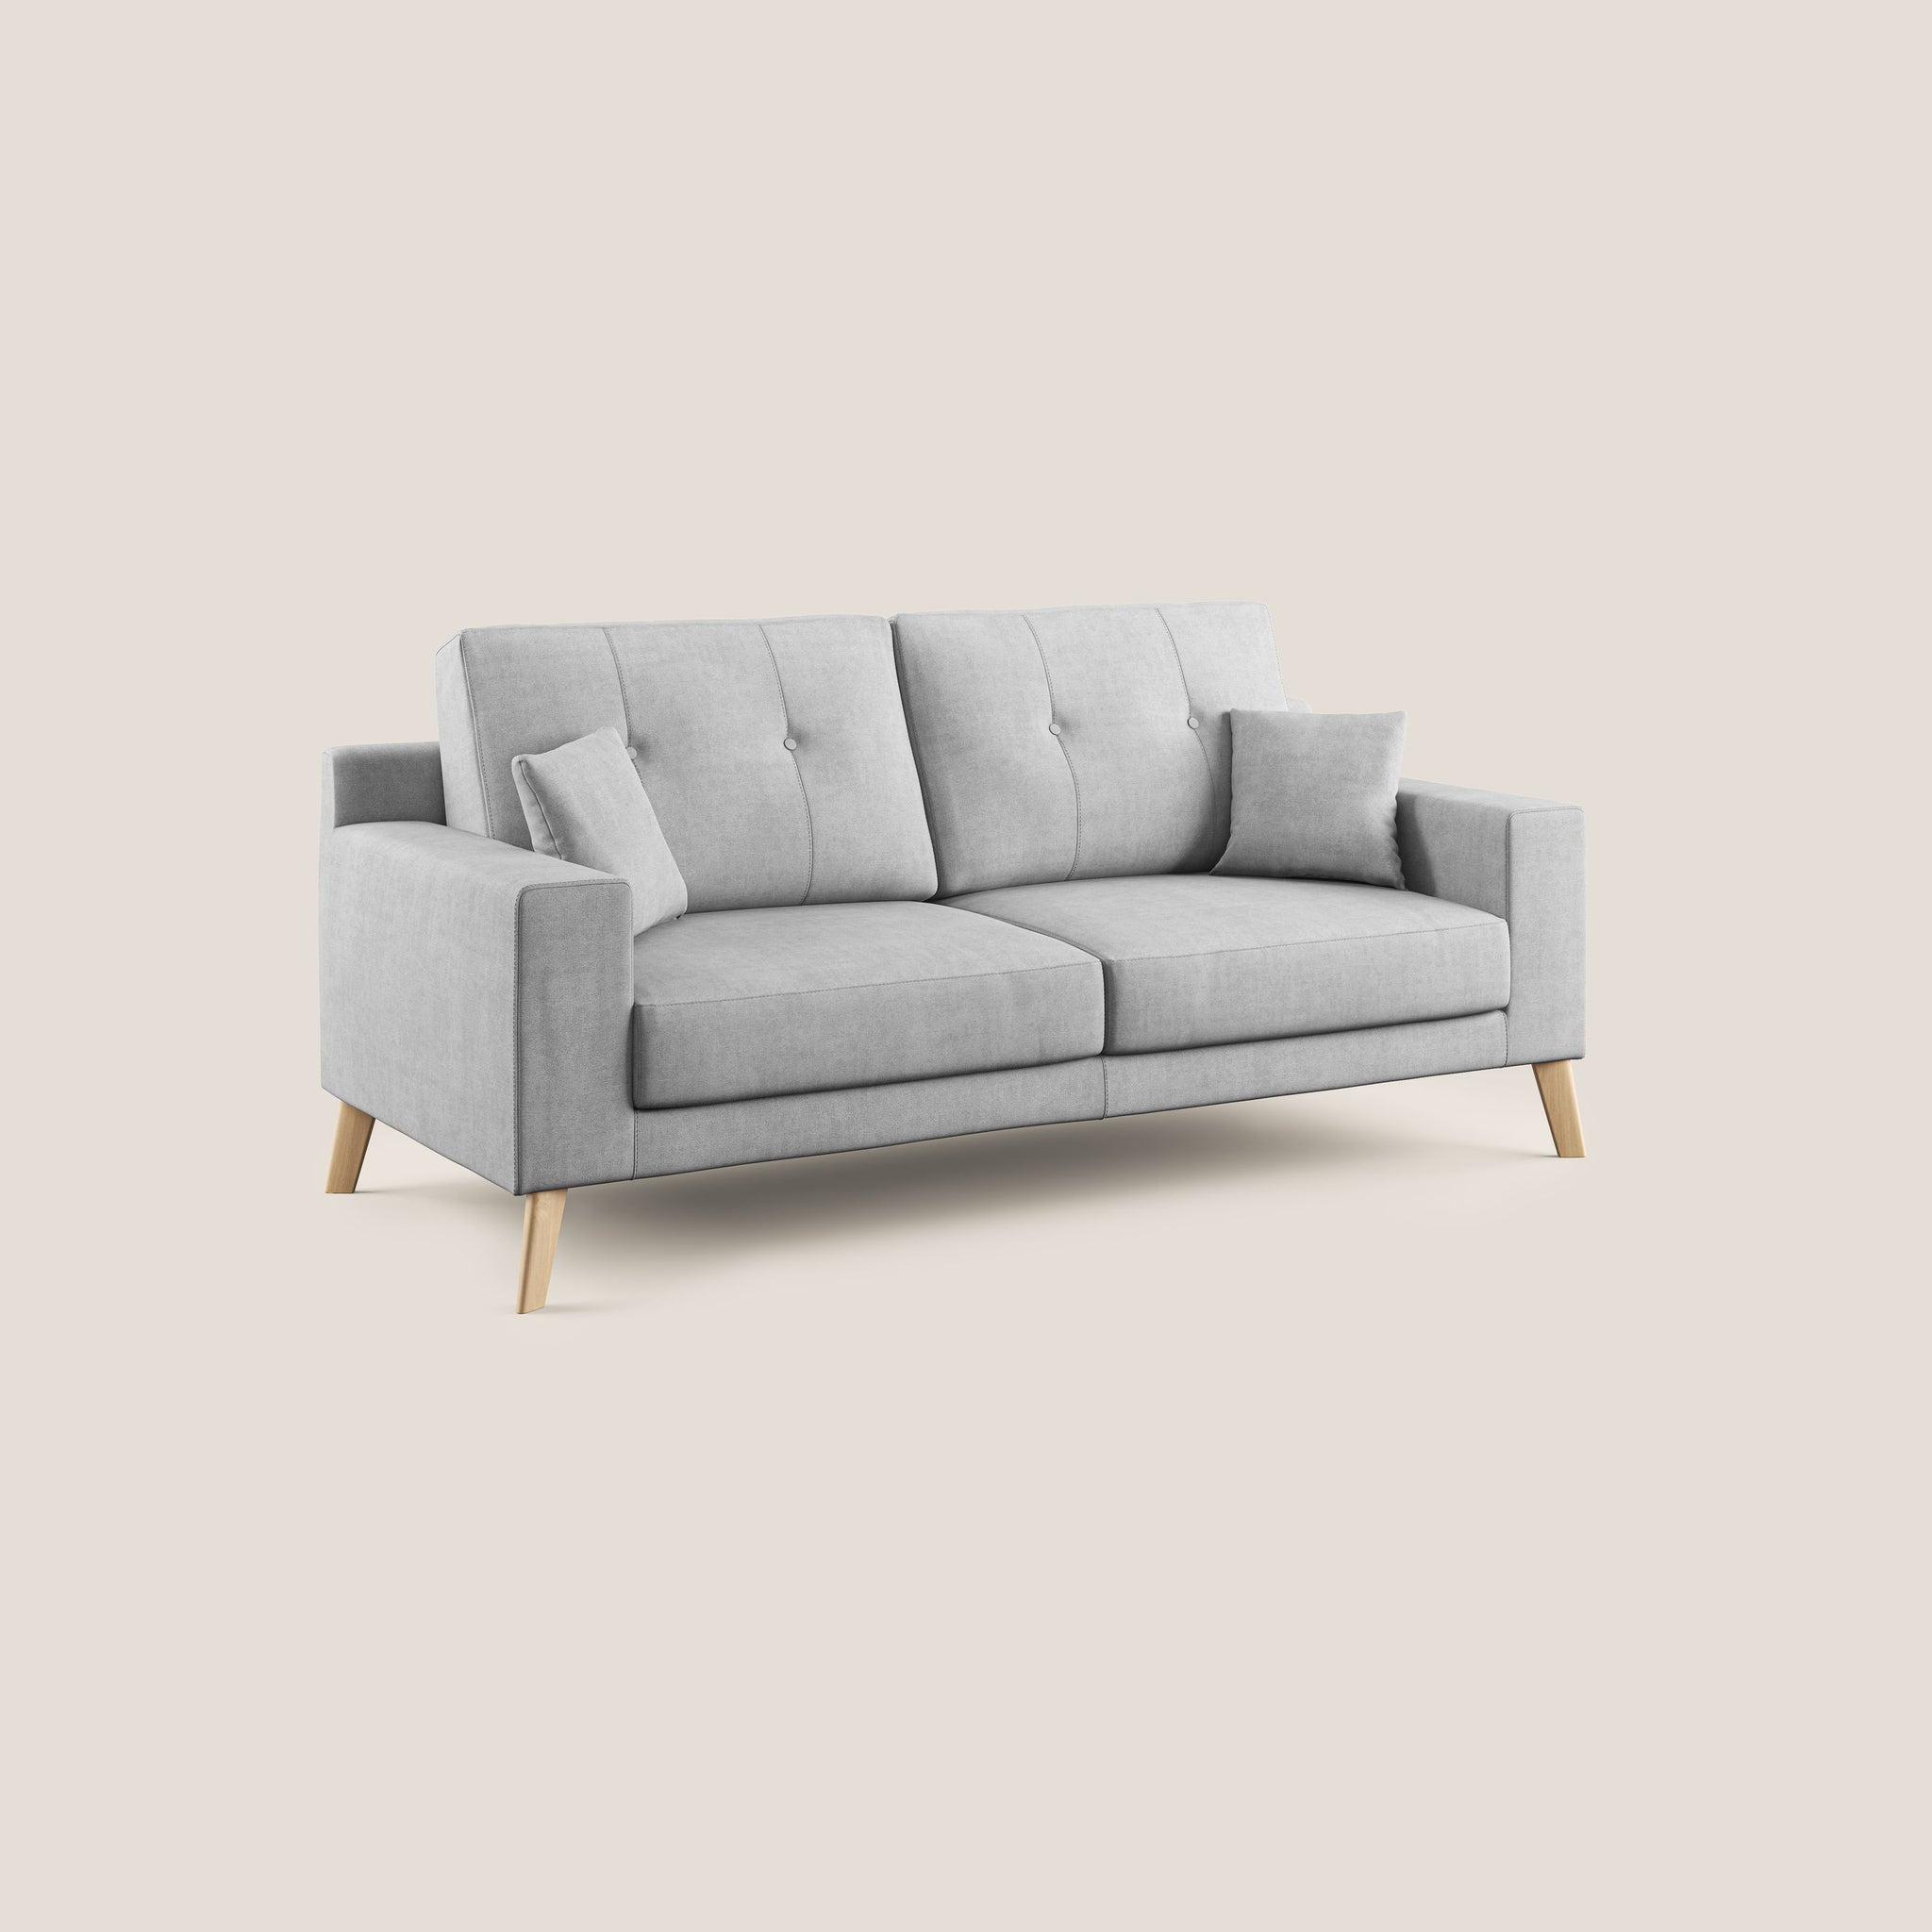 Danish divano moderno in tessuto morbido impermeabile T02